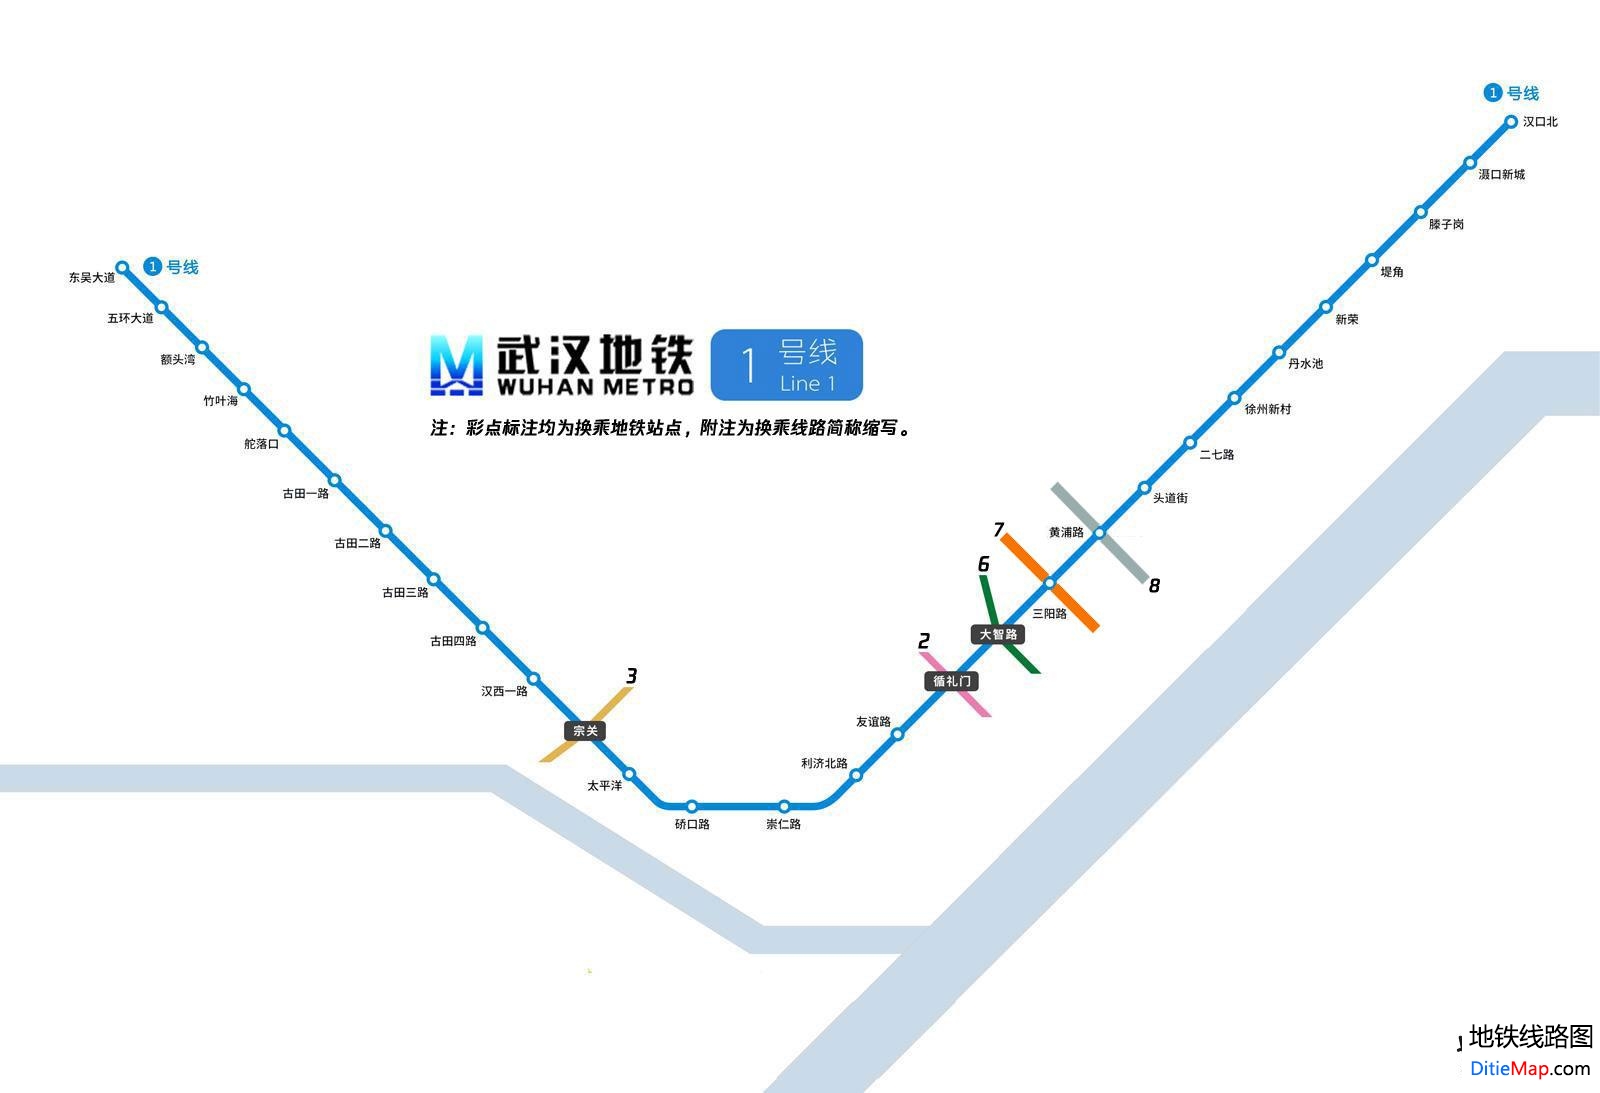 武汉地铁1号线线路图 武汉地铁1号线 武汉地铁一号线 武汉地铁线路图